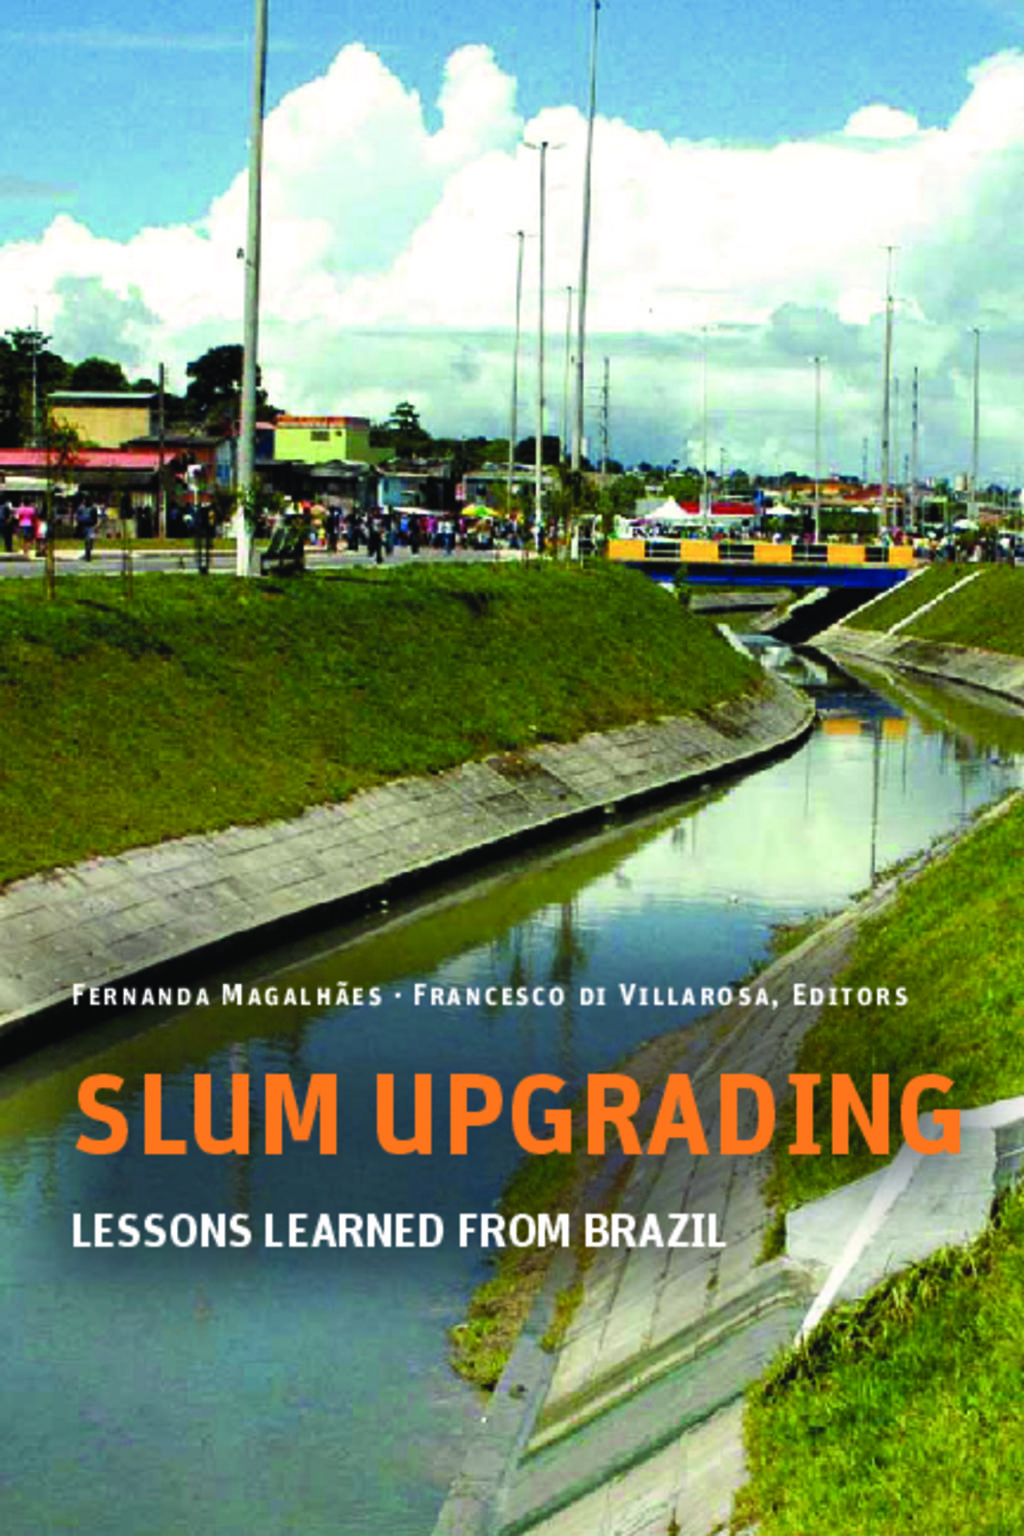 Upgrading Slums in Brazil